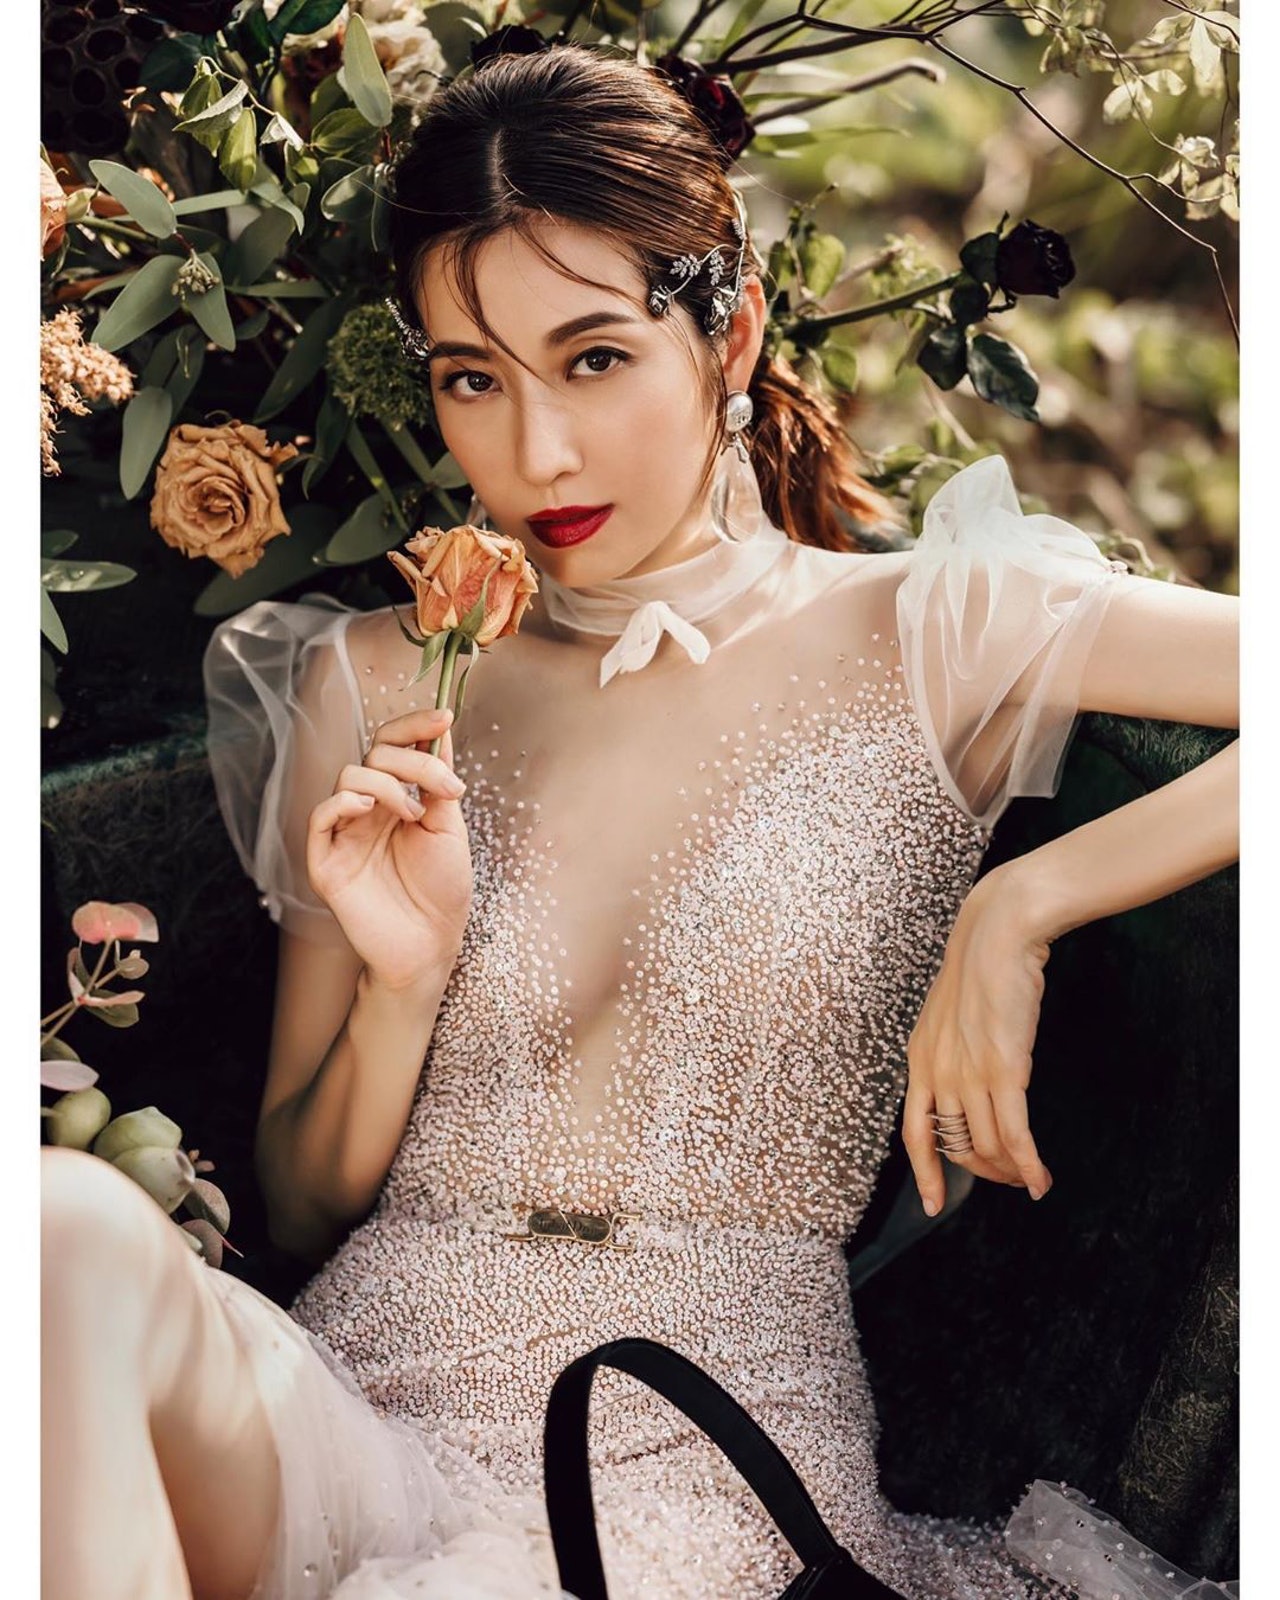 其中一张婚纱照中，陈自瑶手执鲜花，深情凝视镜头，非常优雅。